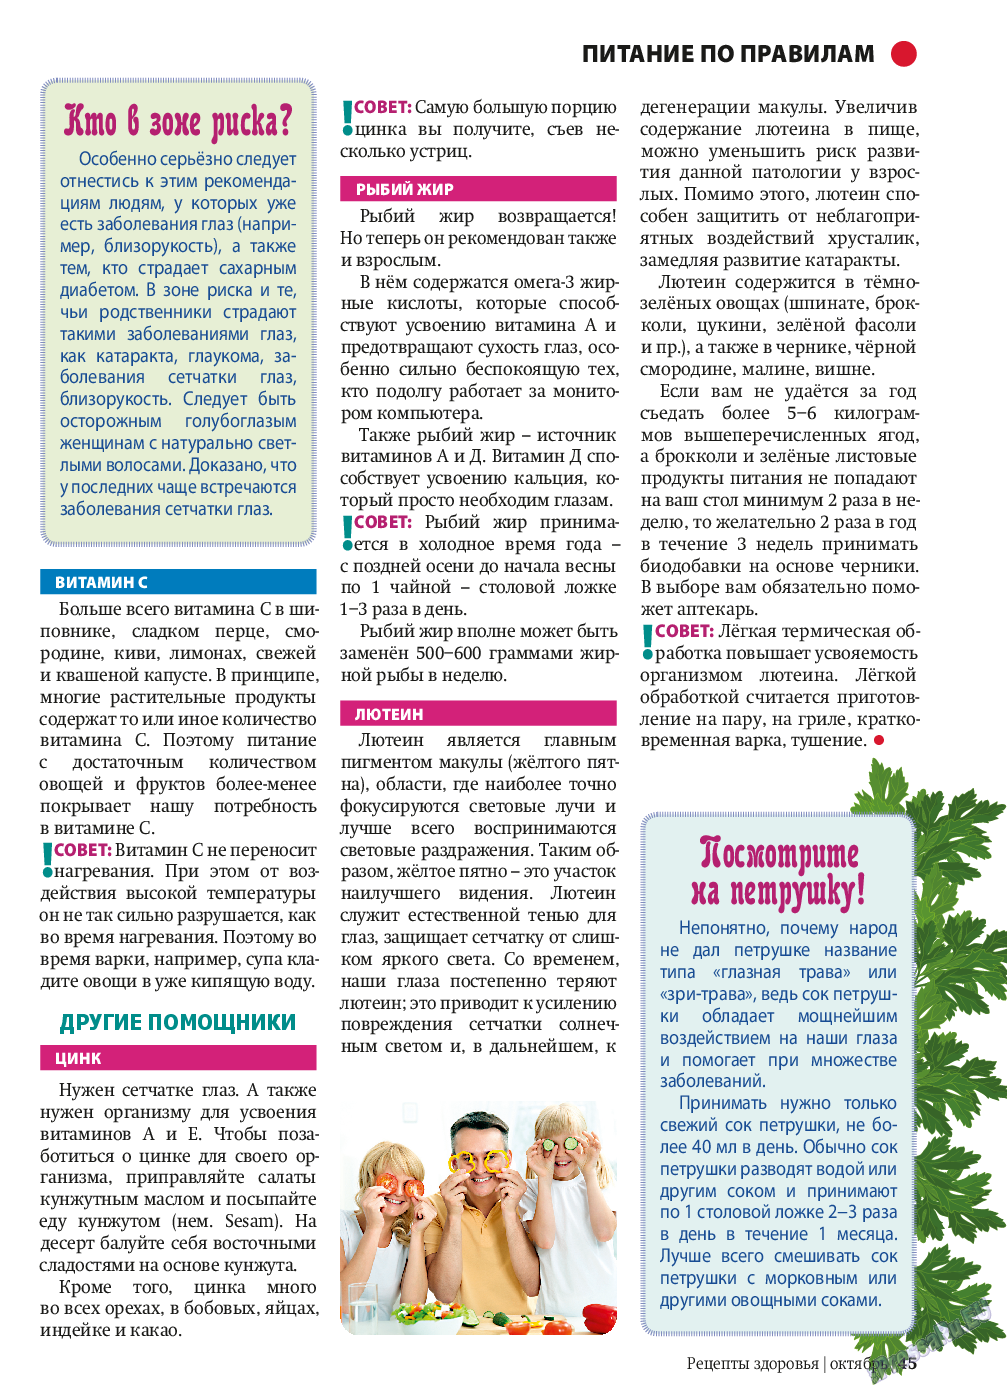 Рецепты здоровья (журнал). 2013 год, номер 10, стр. 45